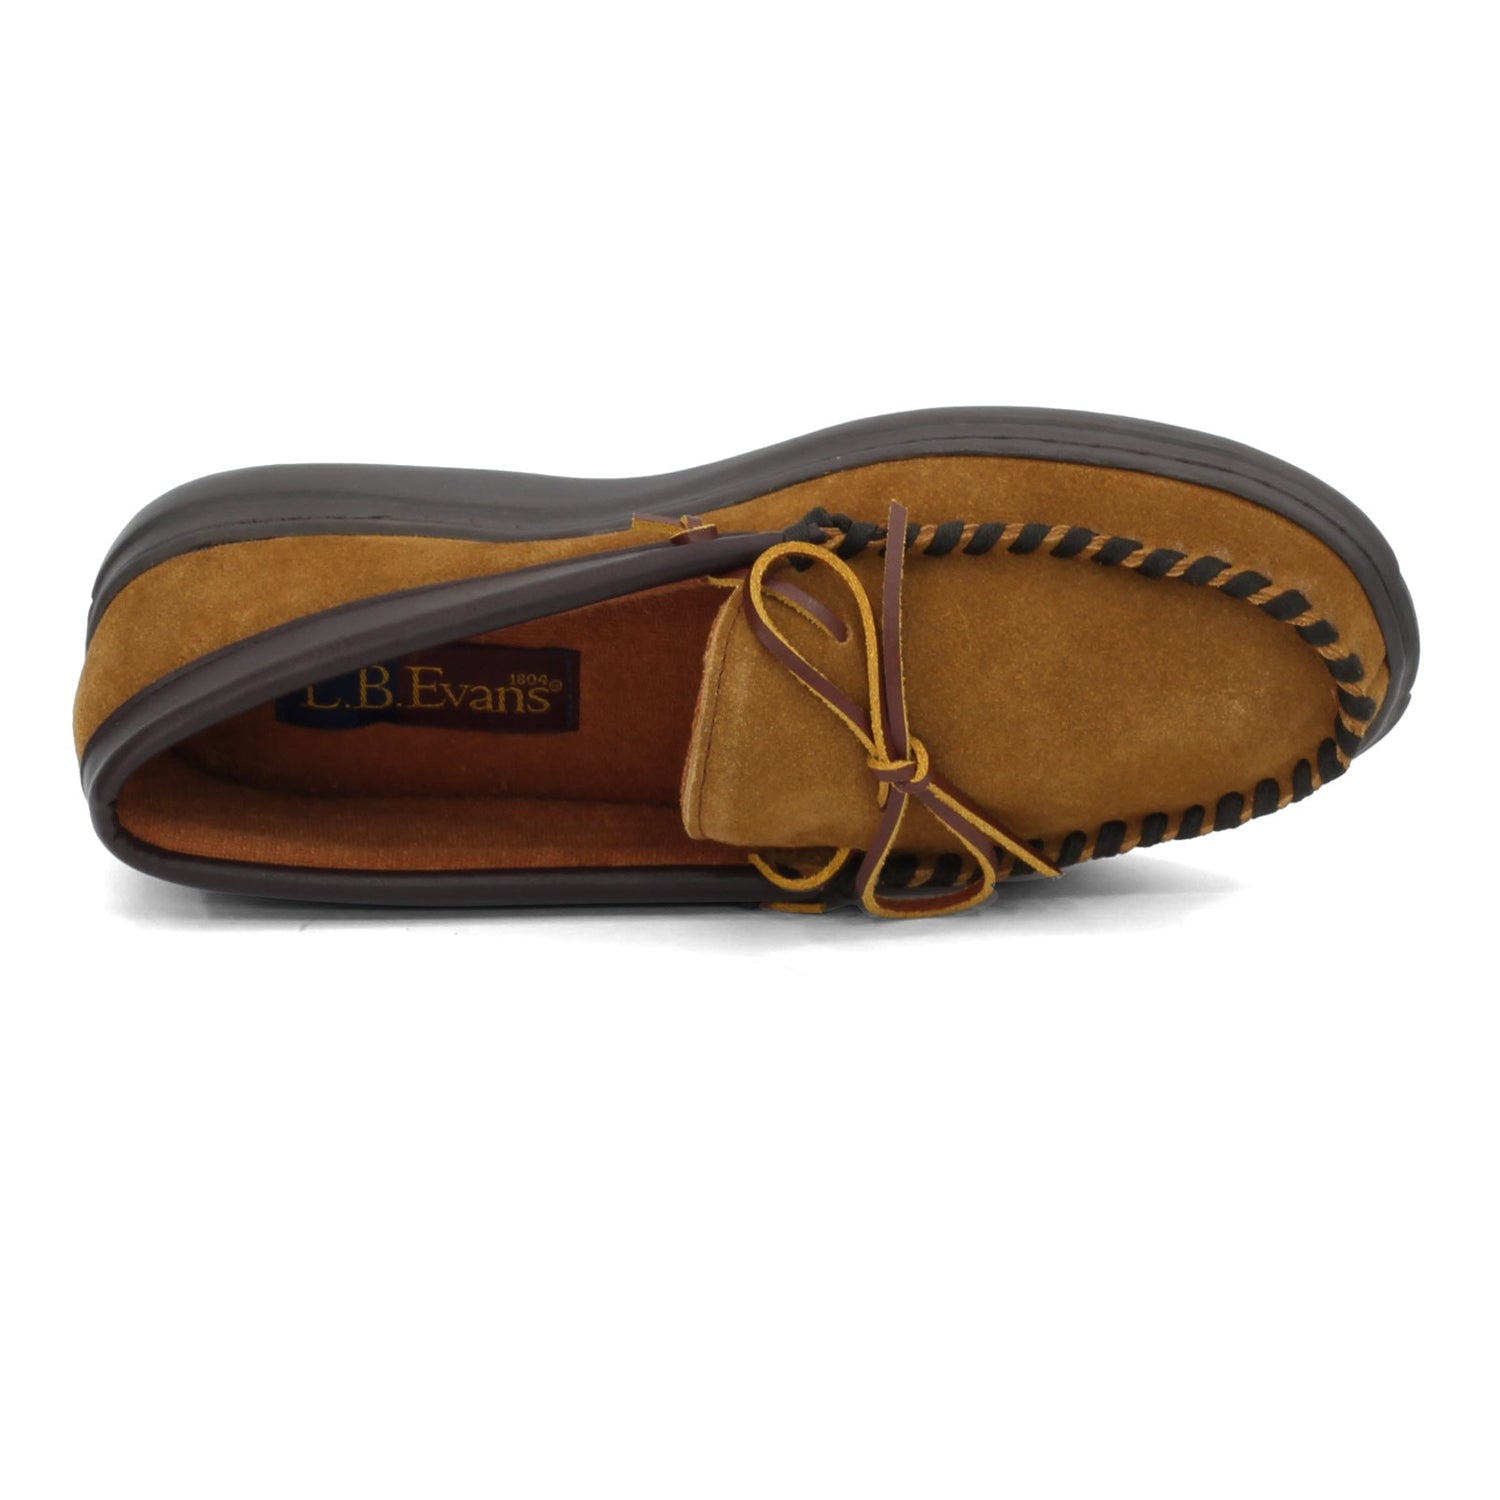 Peltz Shoes  Men's LB Evans Atlin Slipper TAN NUBUCK 1131